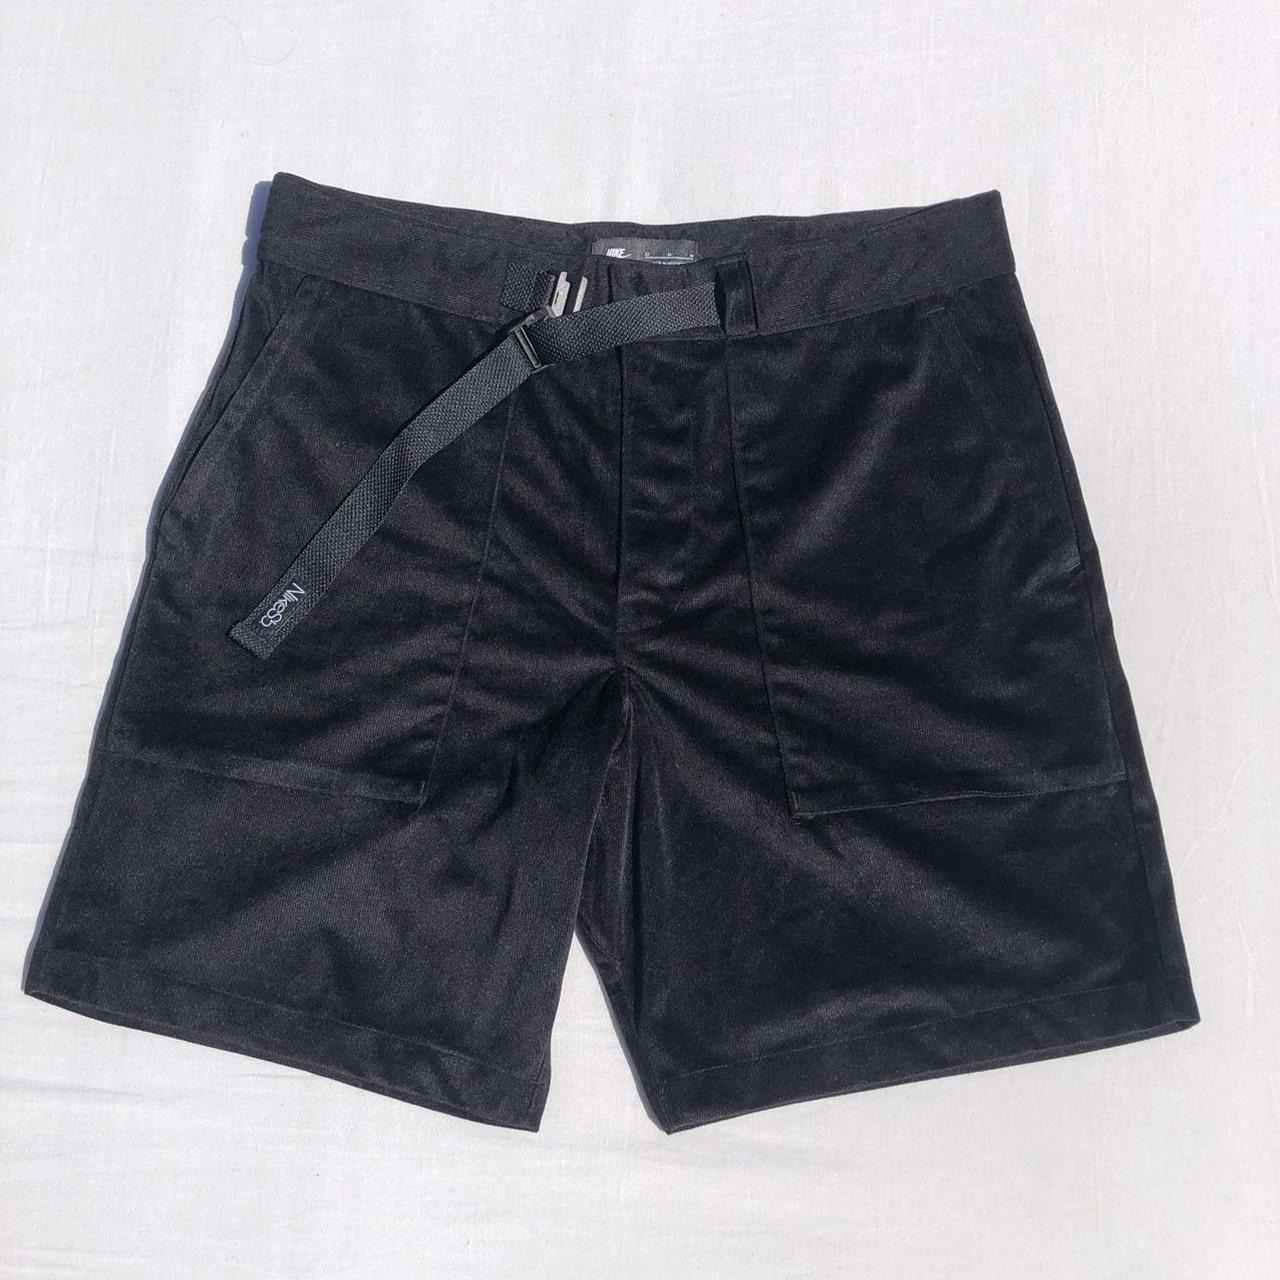 punkandyo cord shorts. size 34 - Depop